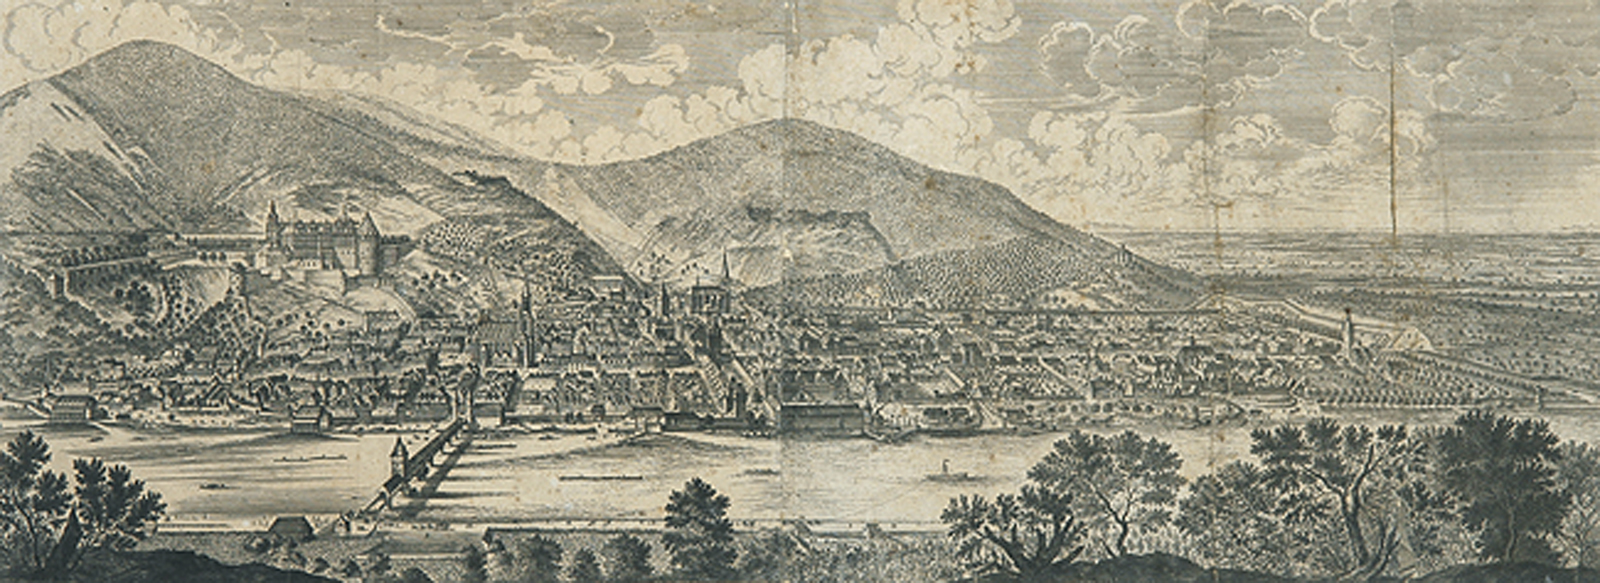 Heidelberg.